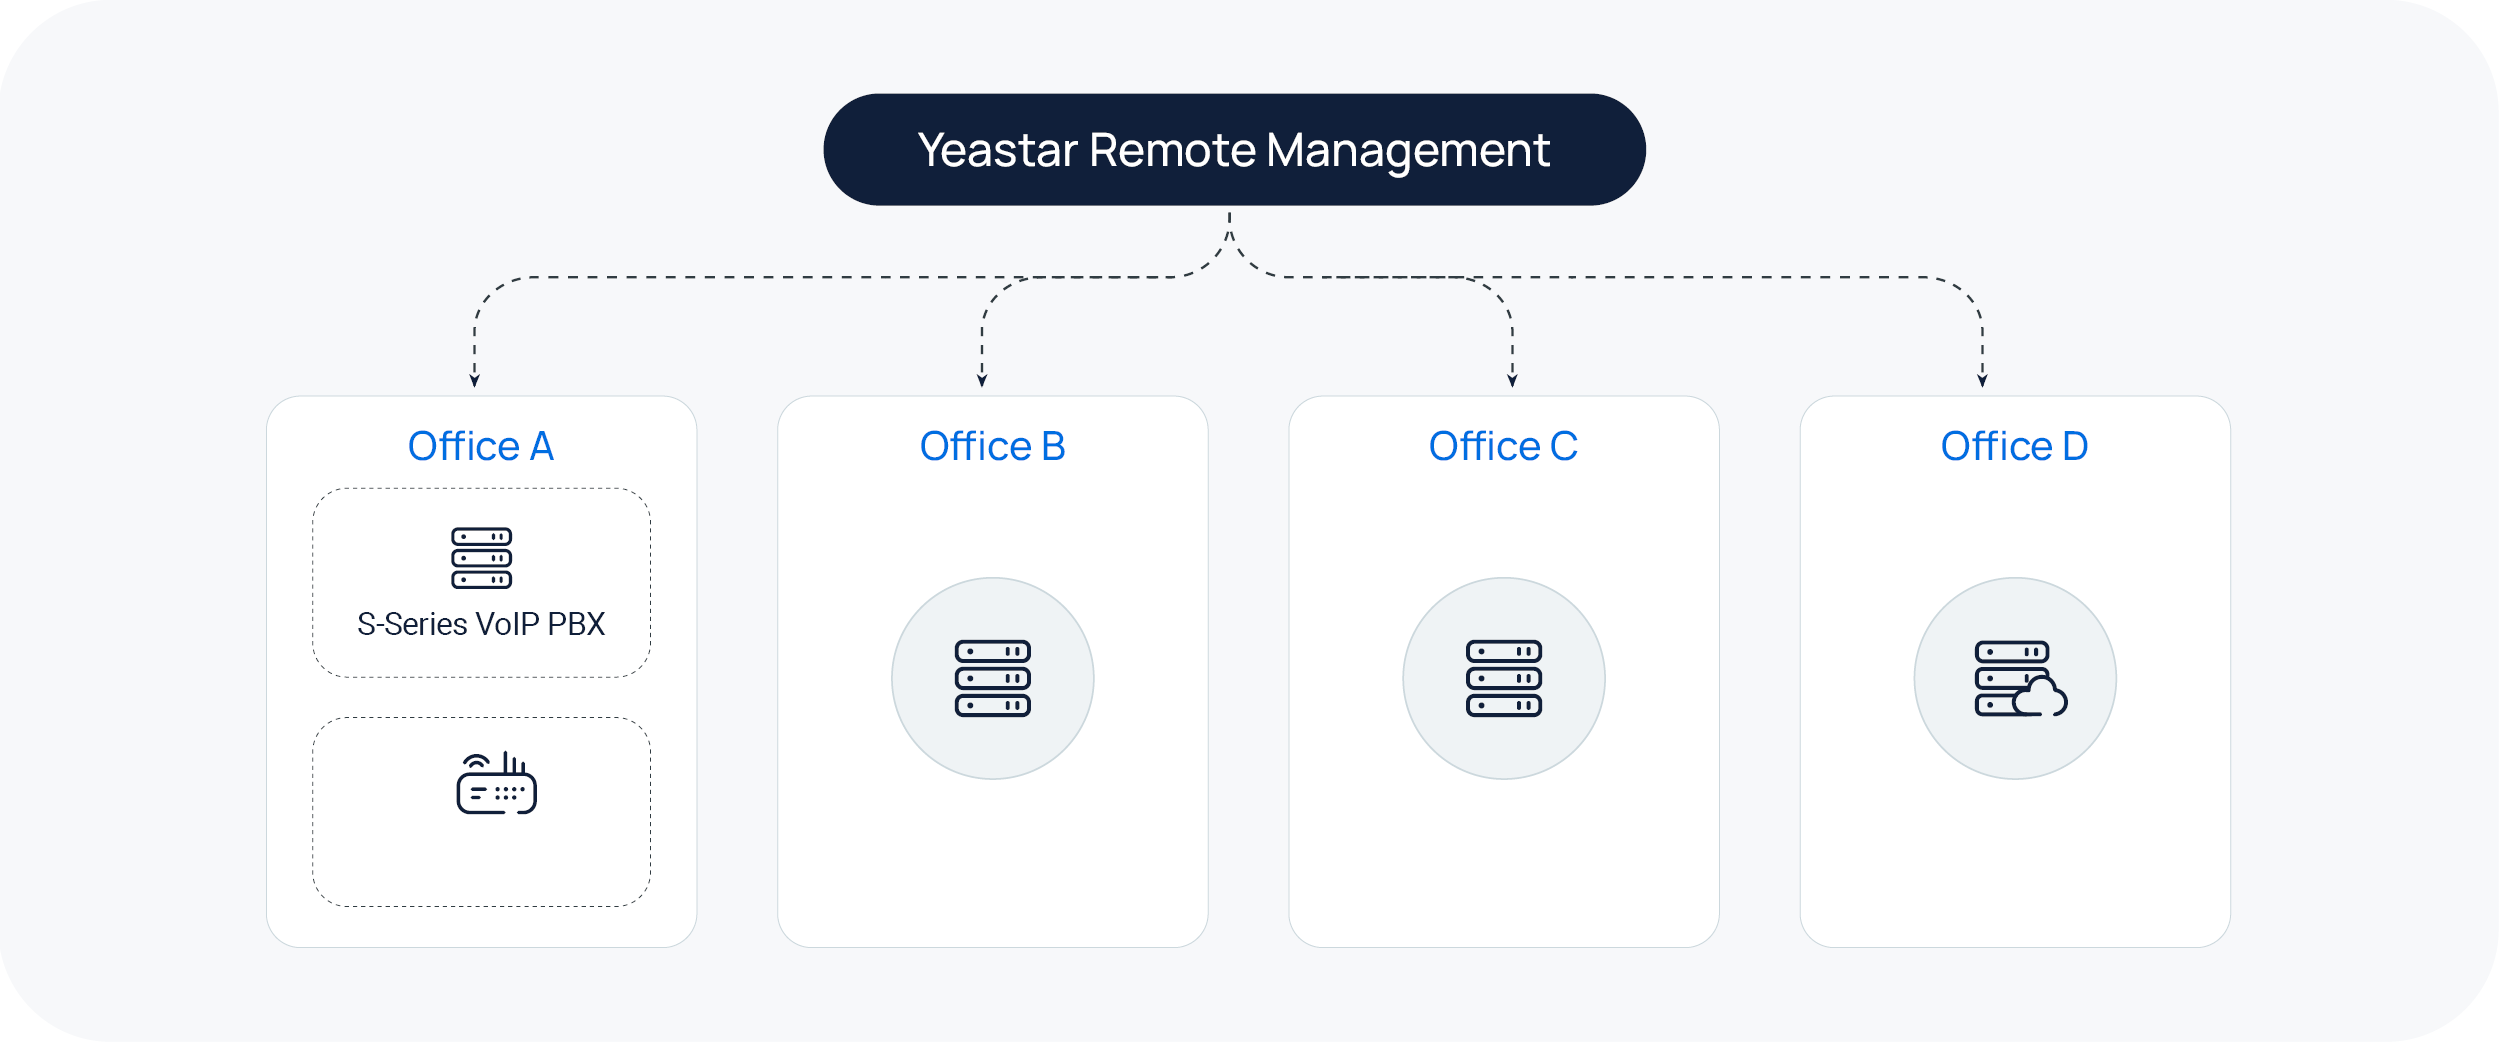 Yeastar Remote Management